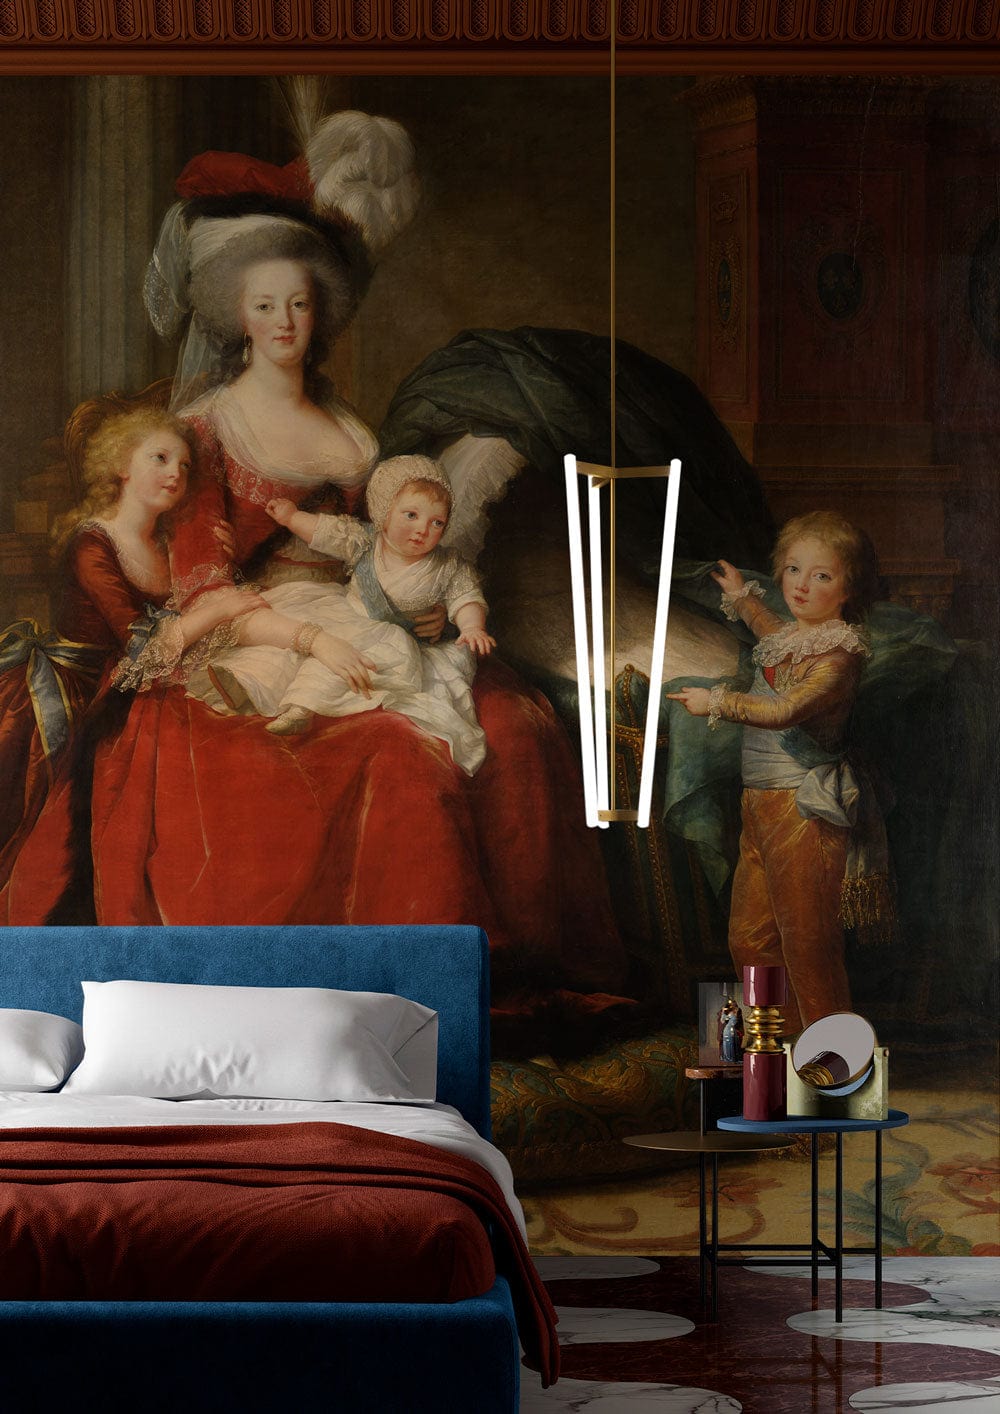 Portrait of Marie Antoinette Wallpaper Mural for bedroom decor